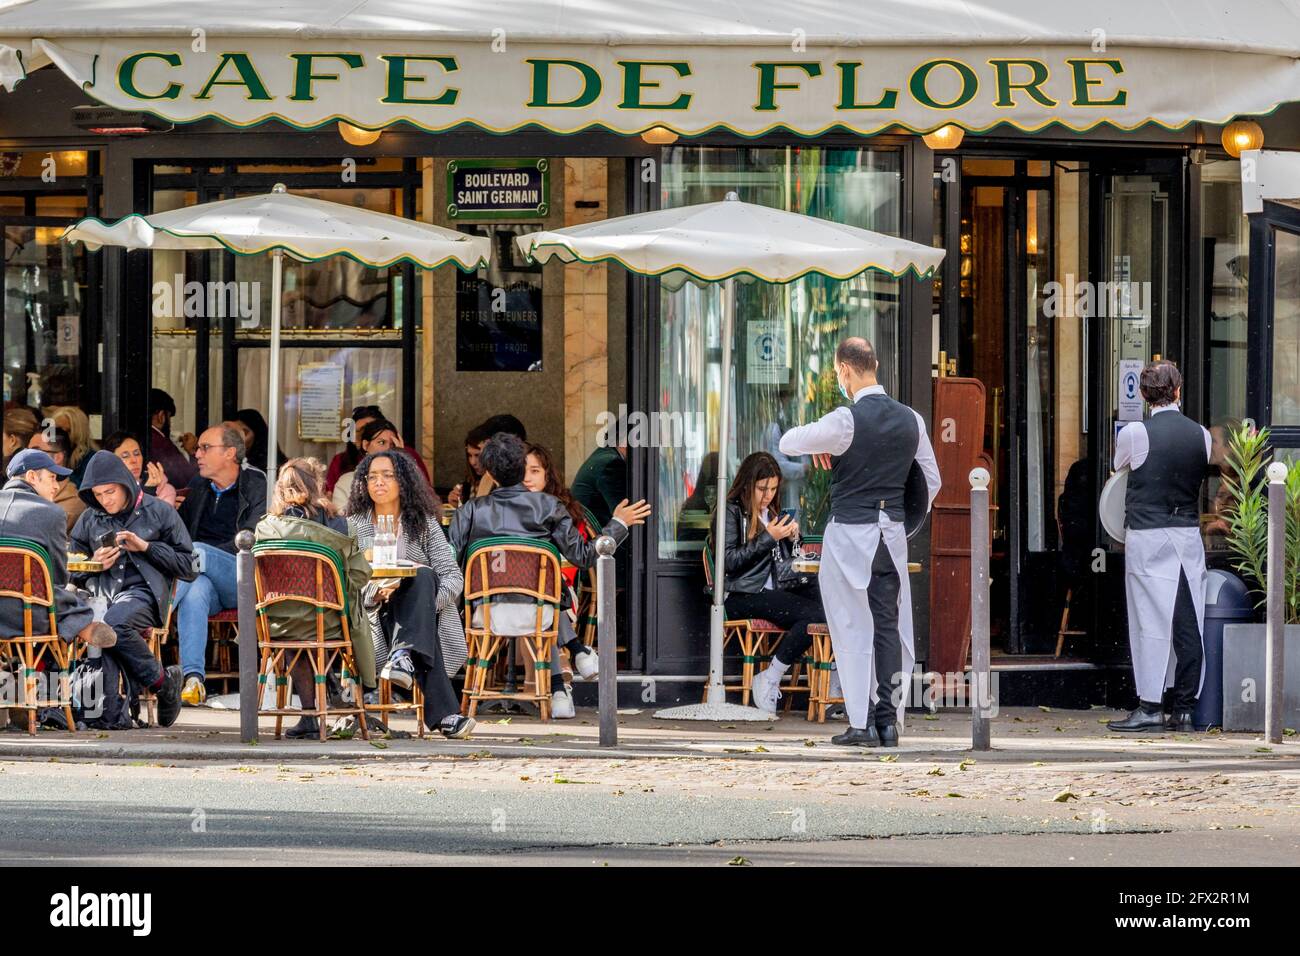 París, Francia - 19 de mayo de 2021: Día después del cierre debido al covid-19 en un famoso café parisino. 2 camareros llevan máscaras quirúrgicas Foto de stock